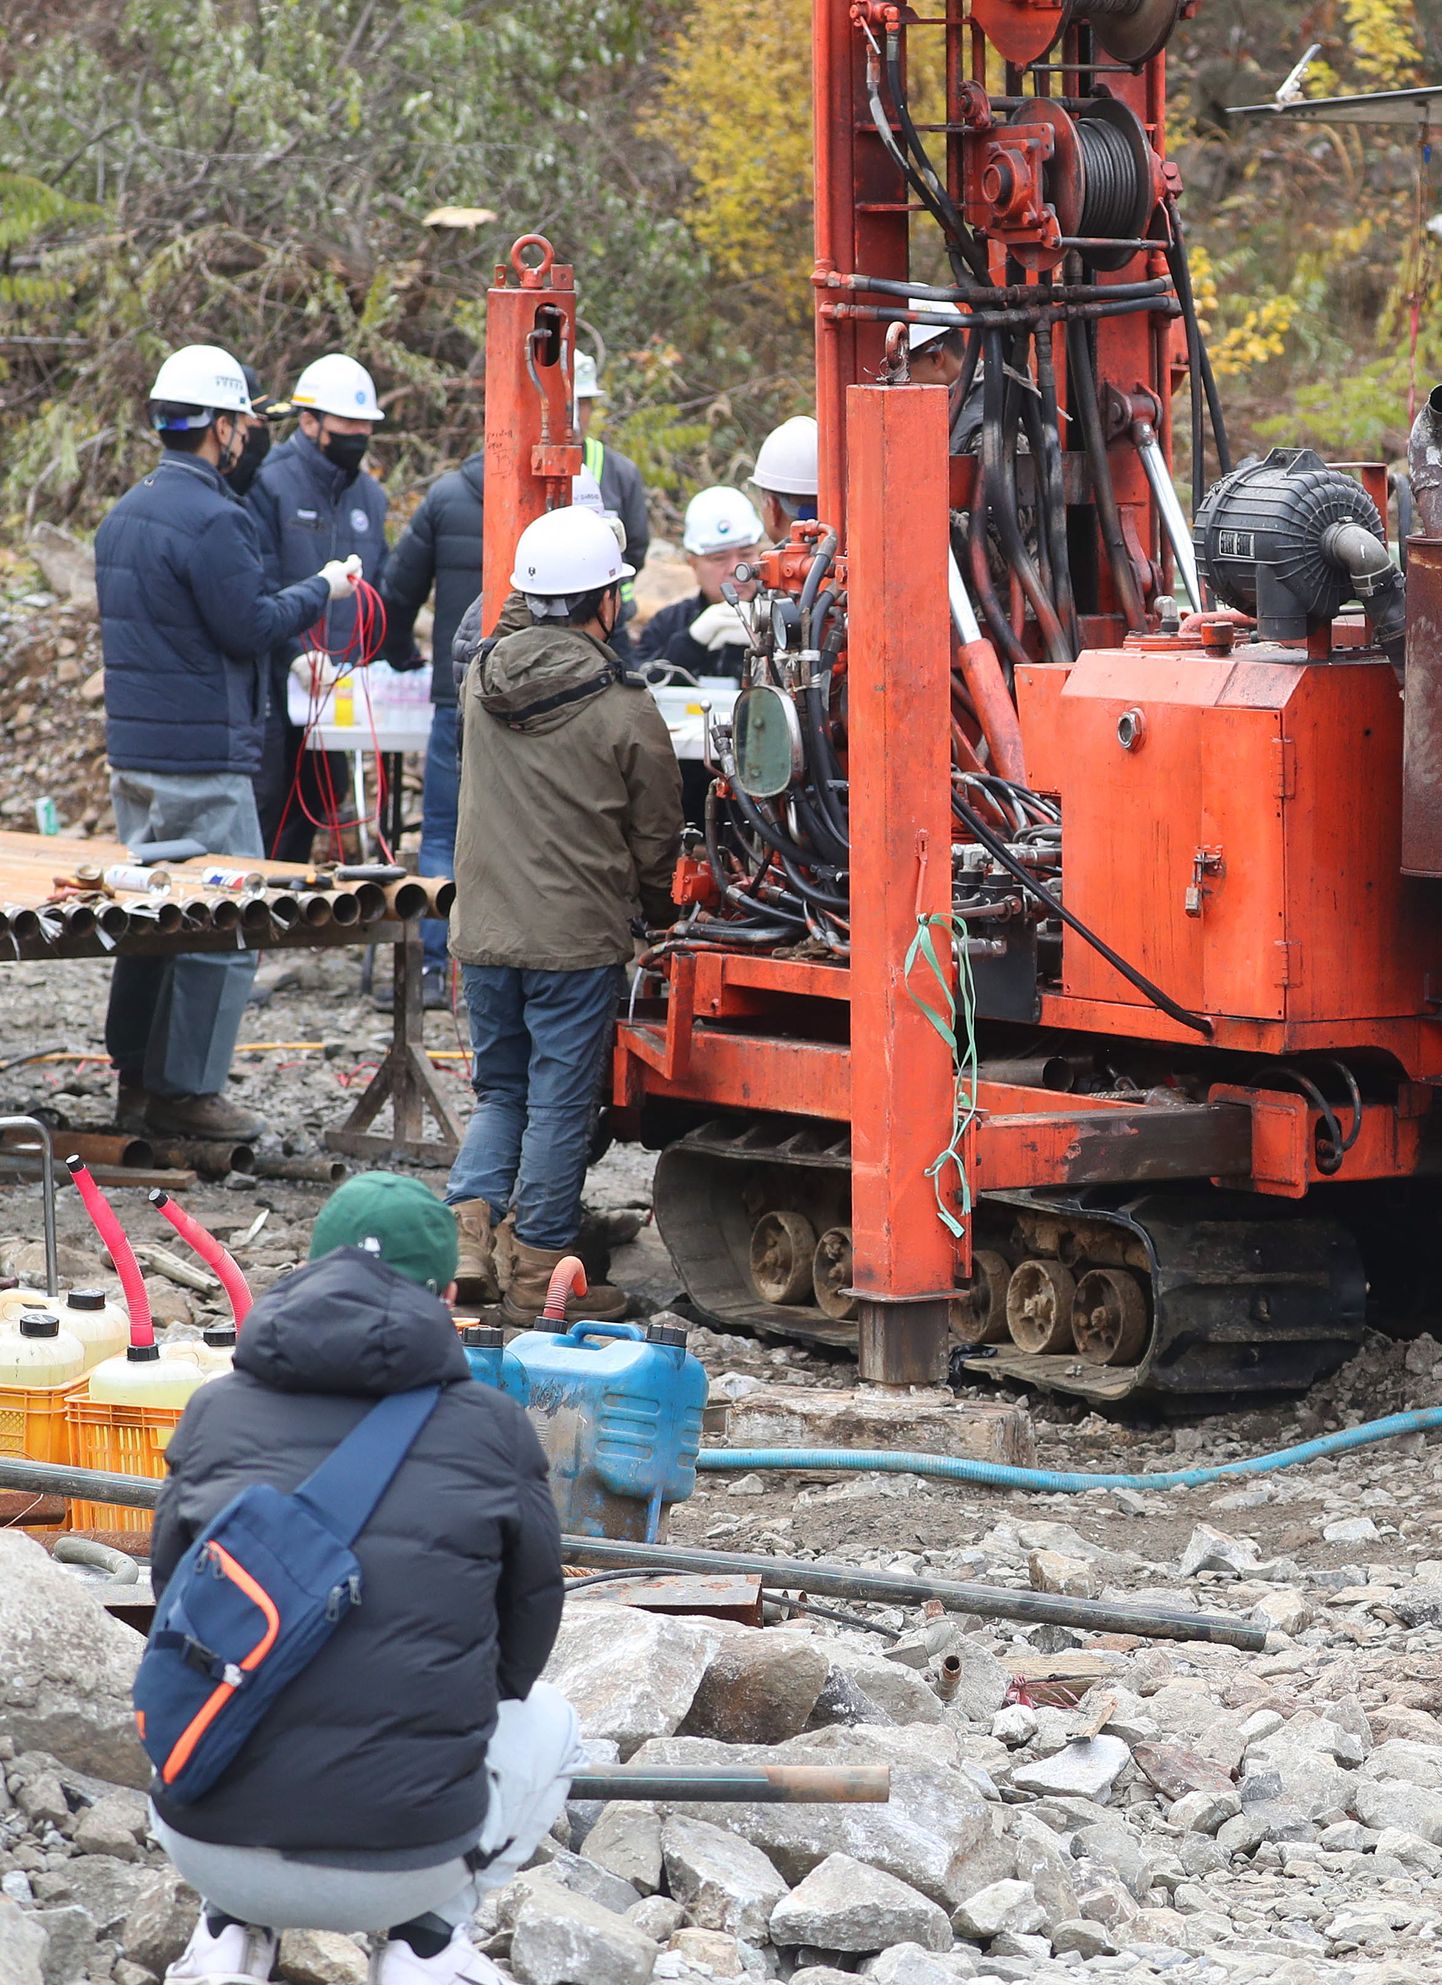 Lõuna-Korea päästjad püüdsid tsingikaevandusse lõksu jäänud kaevureid elusana maapinnale tuua. Foto on tehtud neljapäeval, 3. novembril.